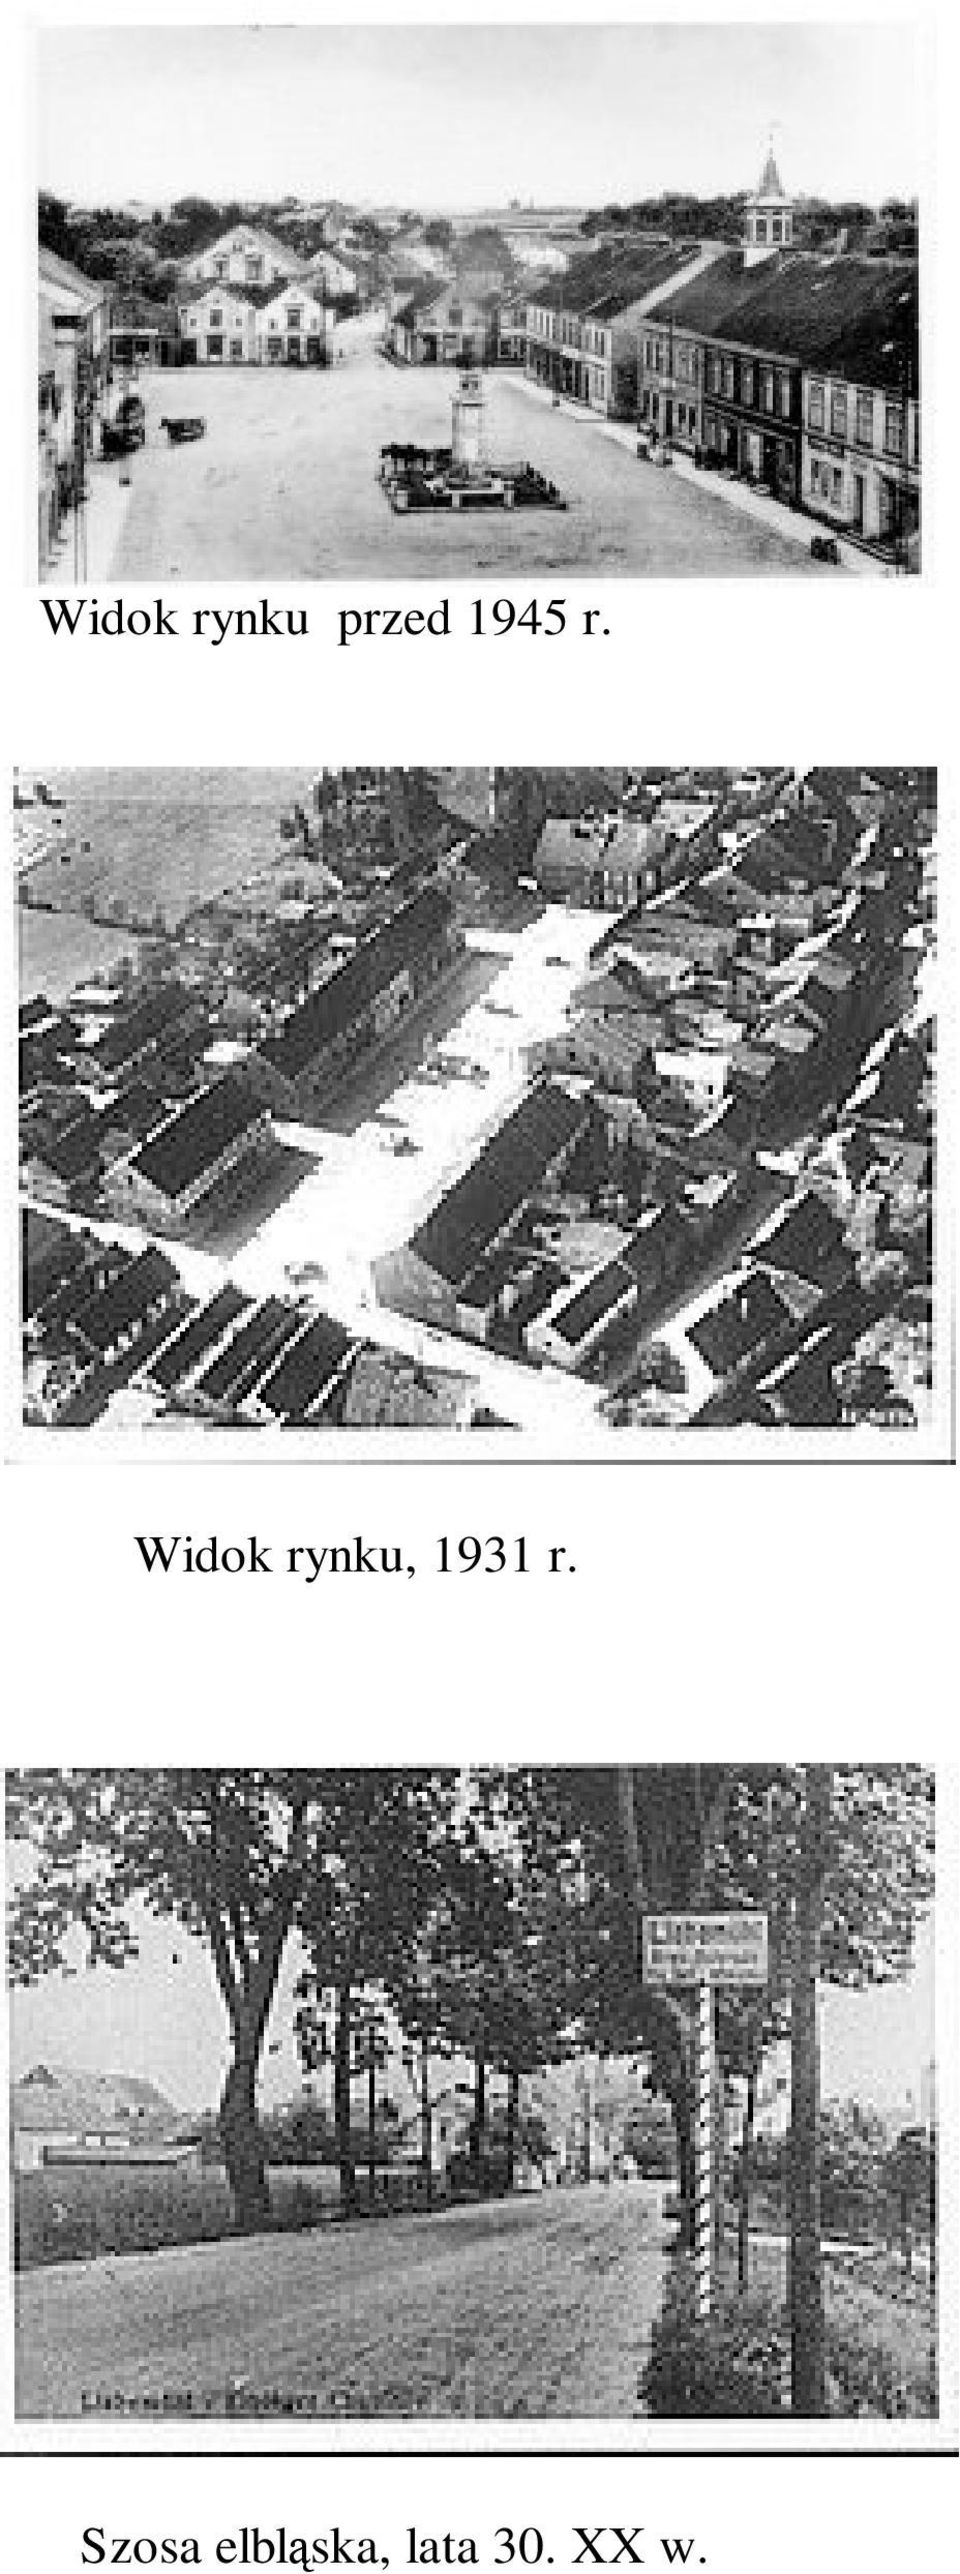 Widok rynku, 1931 r.